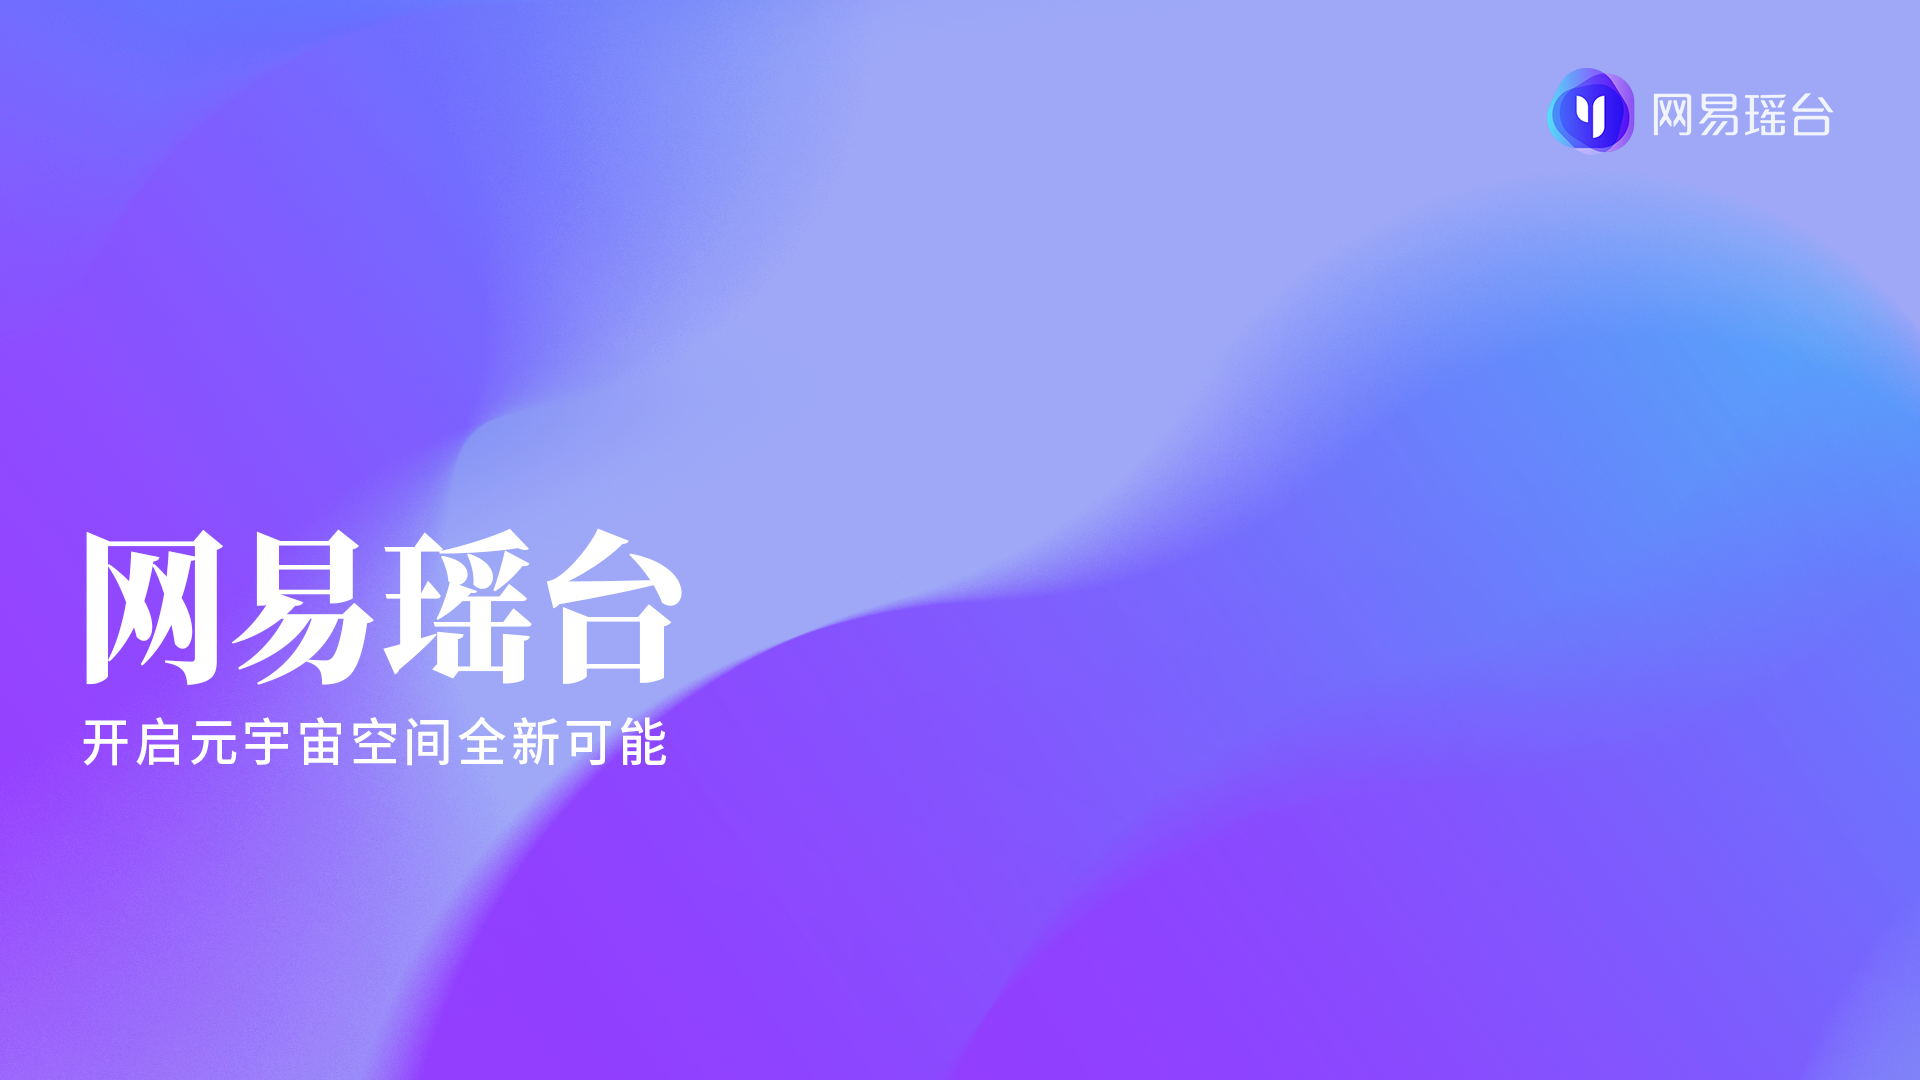 这是一个紫色渐变背景的图像，上面有白色中文文字“网易云音乐”和“用音乐连接全世界”，旁边有网易云音乐的标志。